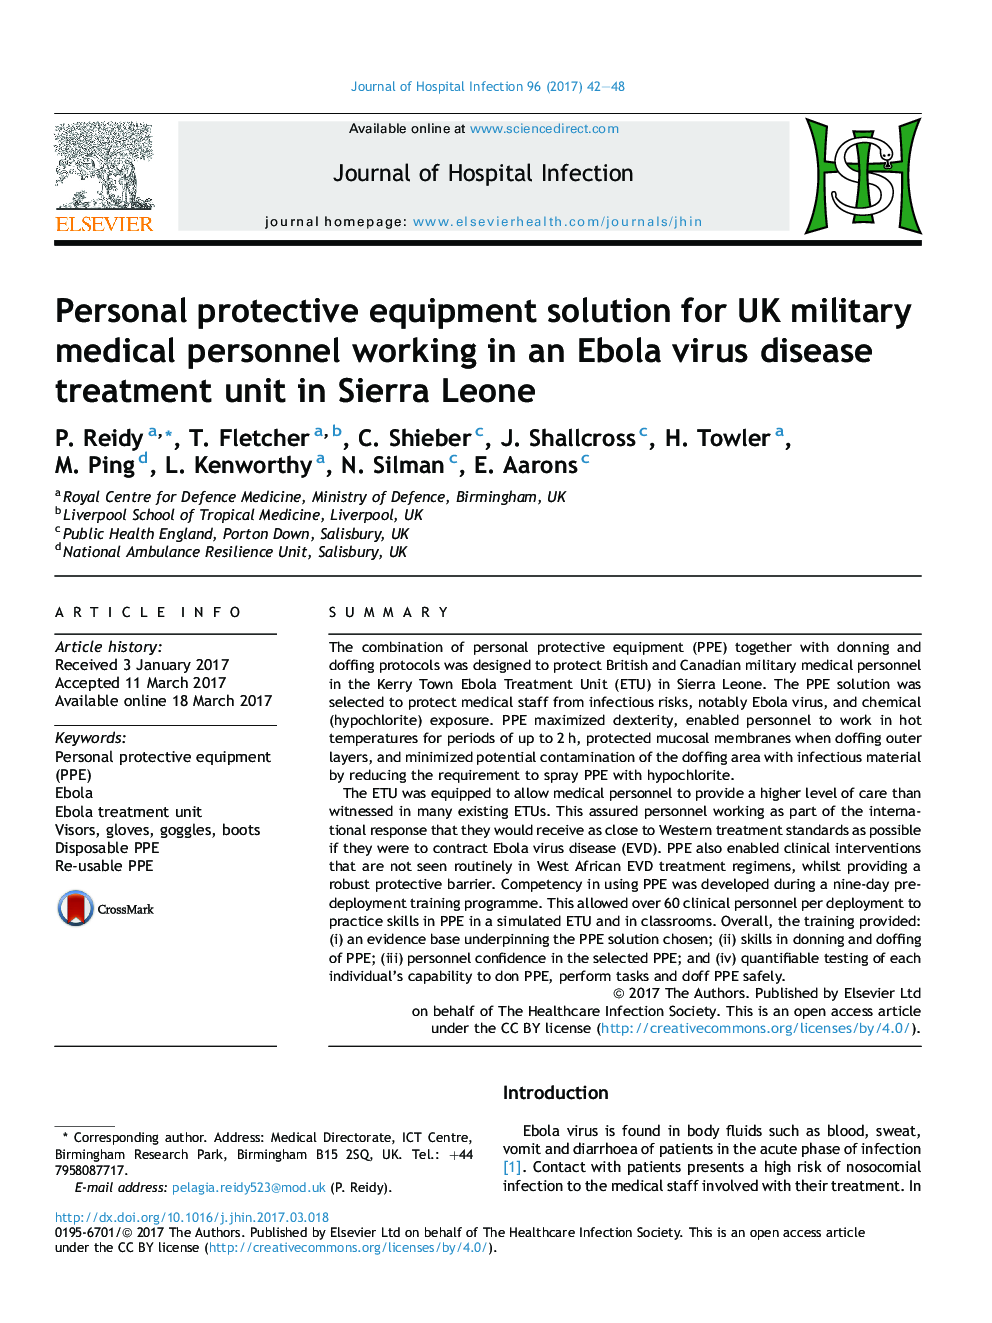 راه حل های محافظ شخصی برای پرسنل نظامی انگلیس که در یک واحد درمان ویروس ابولا در سیرالئون کار می کنند 